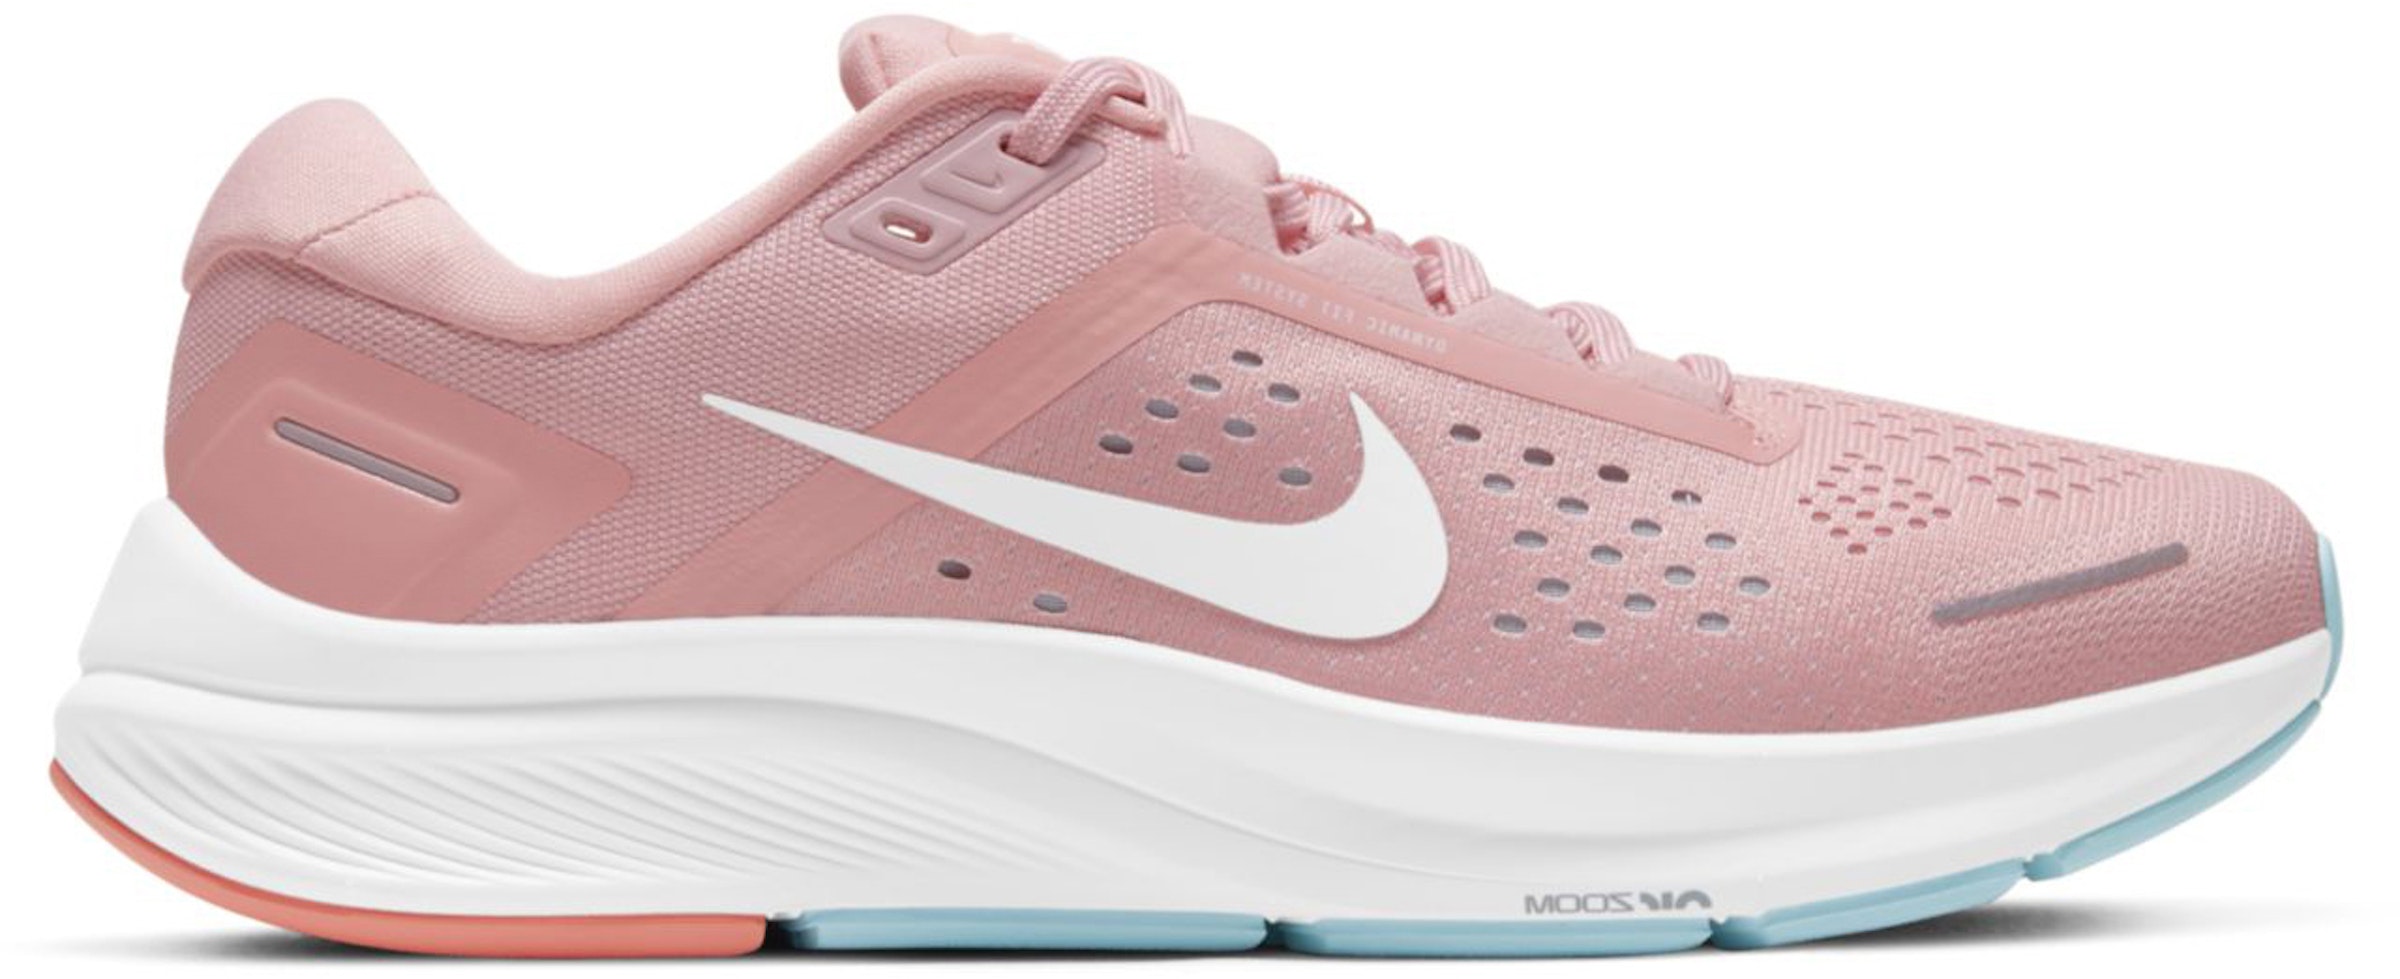 grens goochelaar Site lijn Nike Air Zoom Structure 23 Pink Glaze (Women's) - CZ6721-601 - US